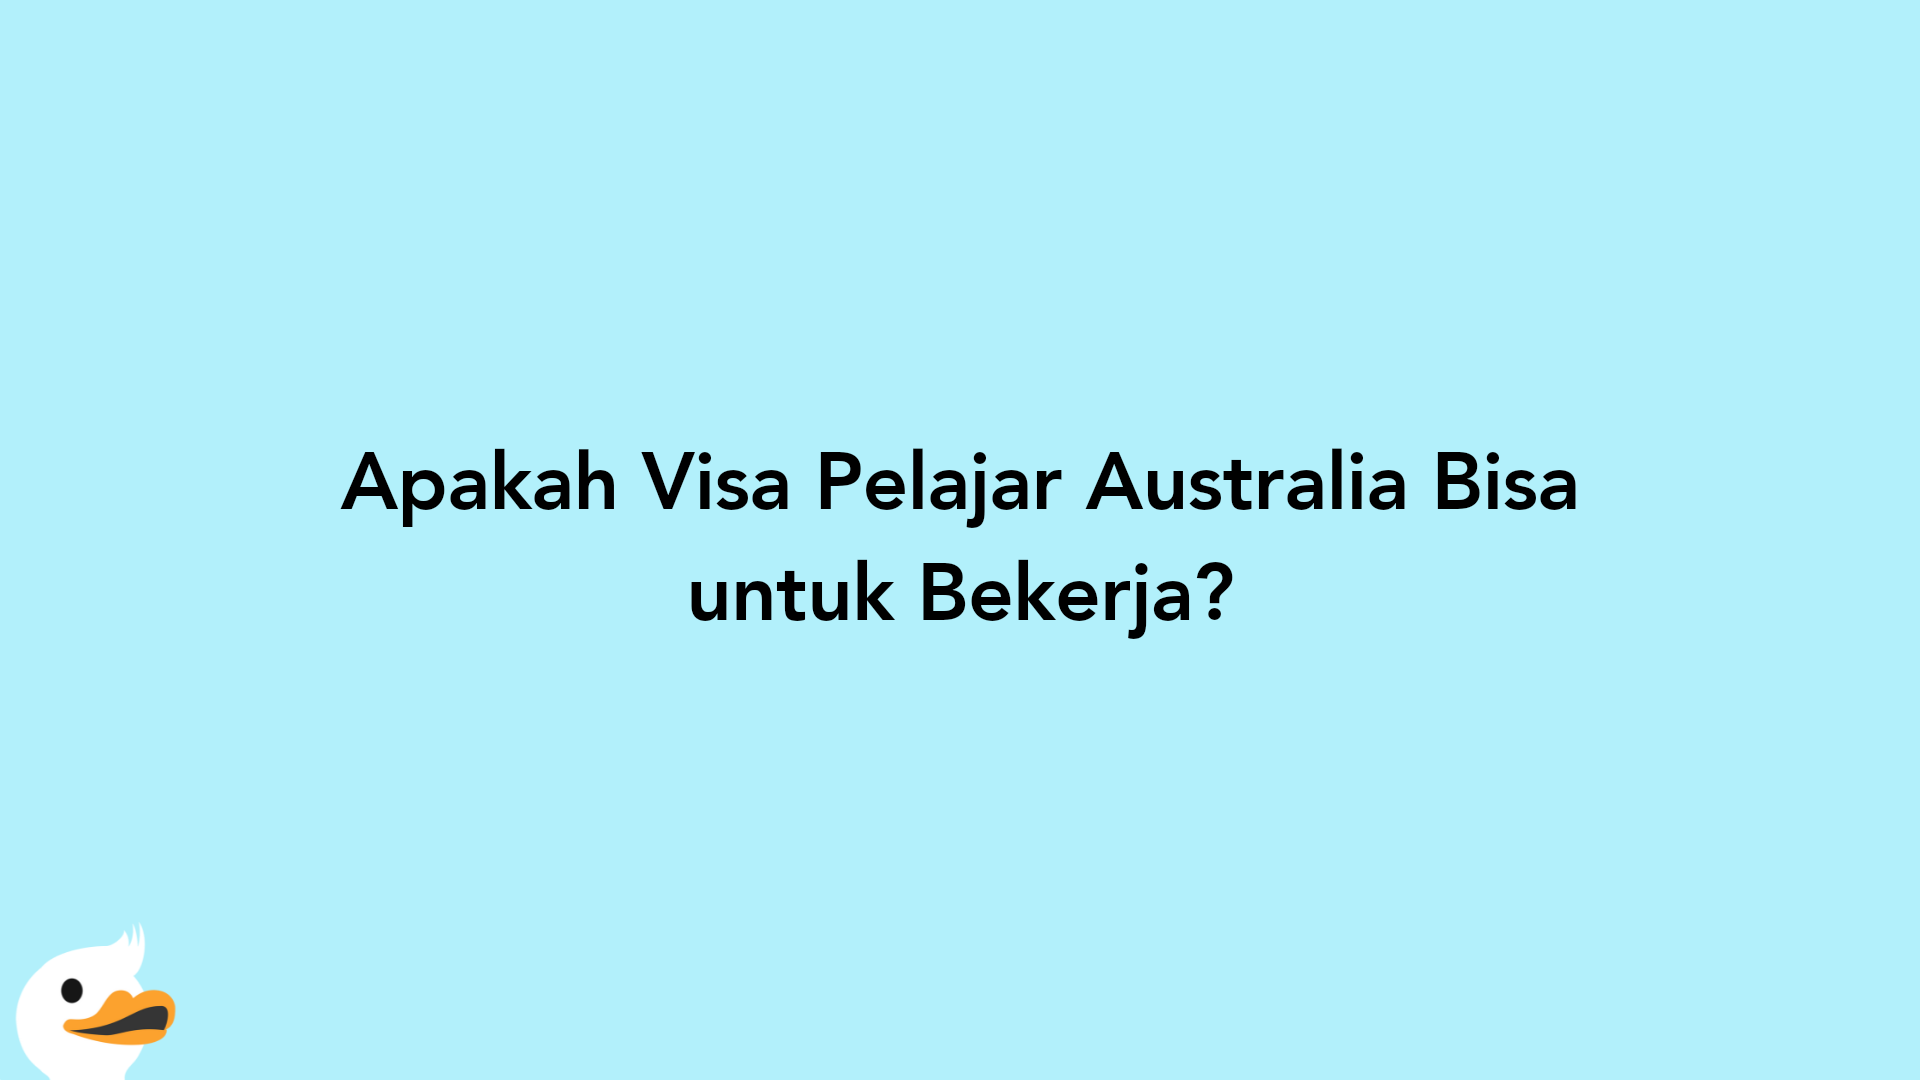 Apakah Visa Pelajar Australia Bisa untuk Bekerja?